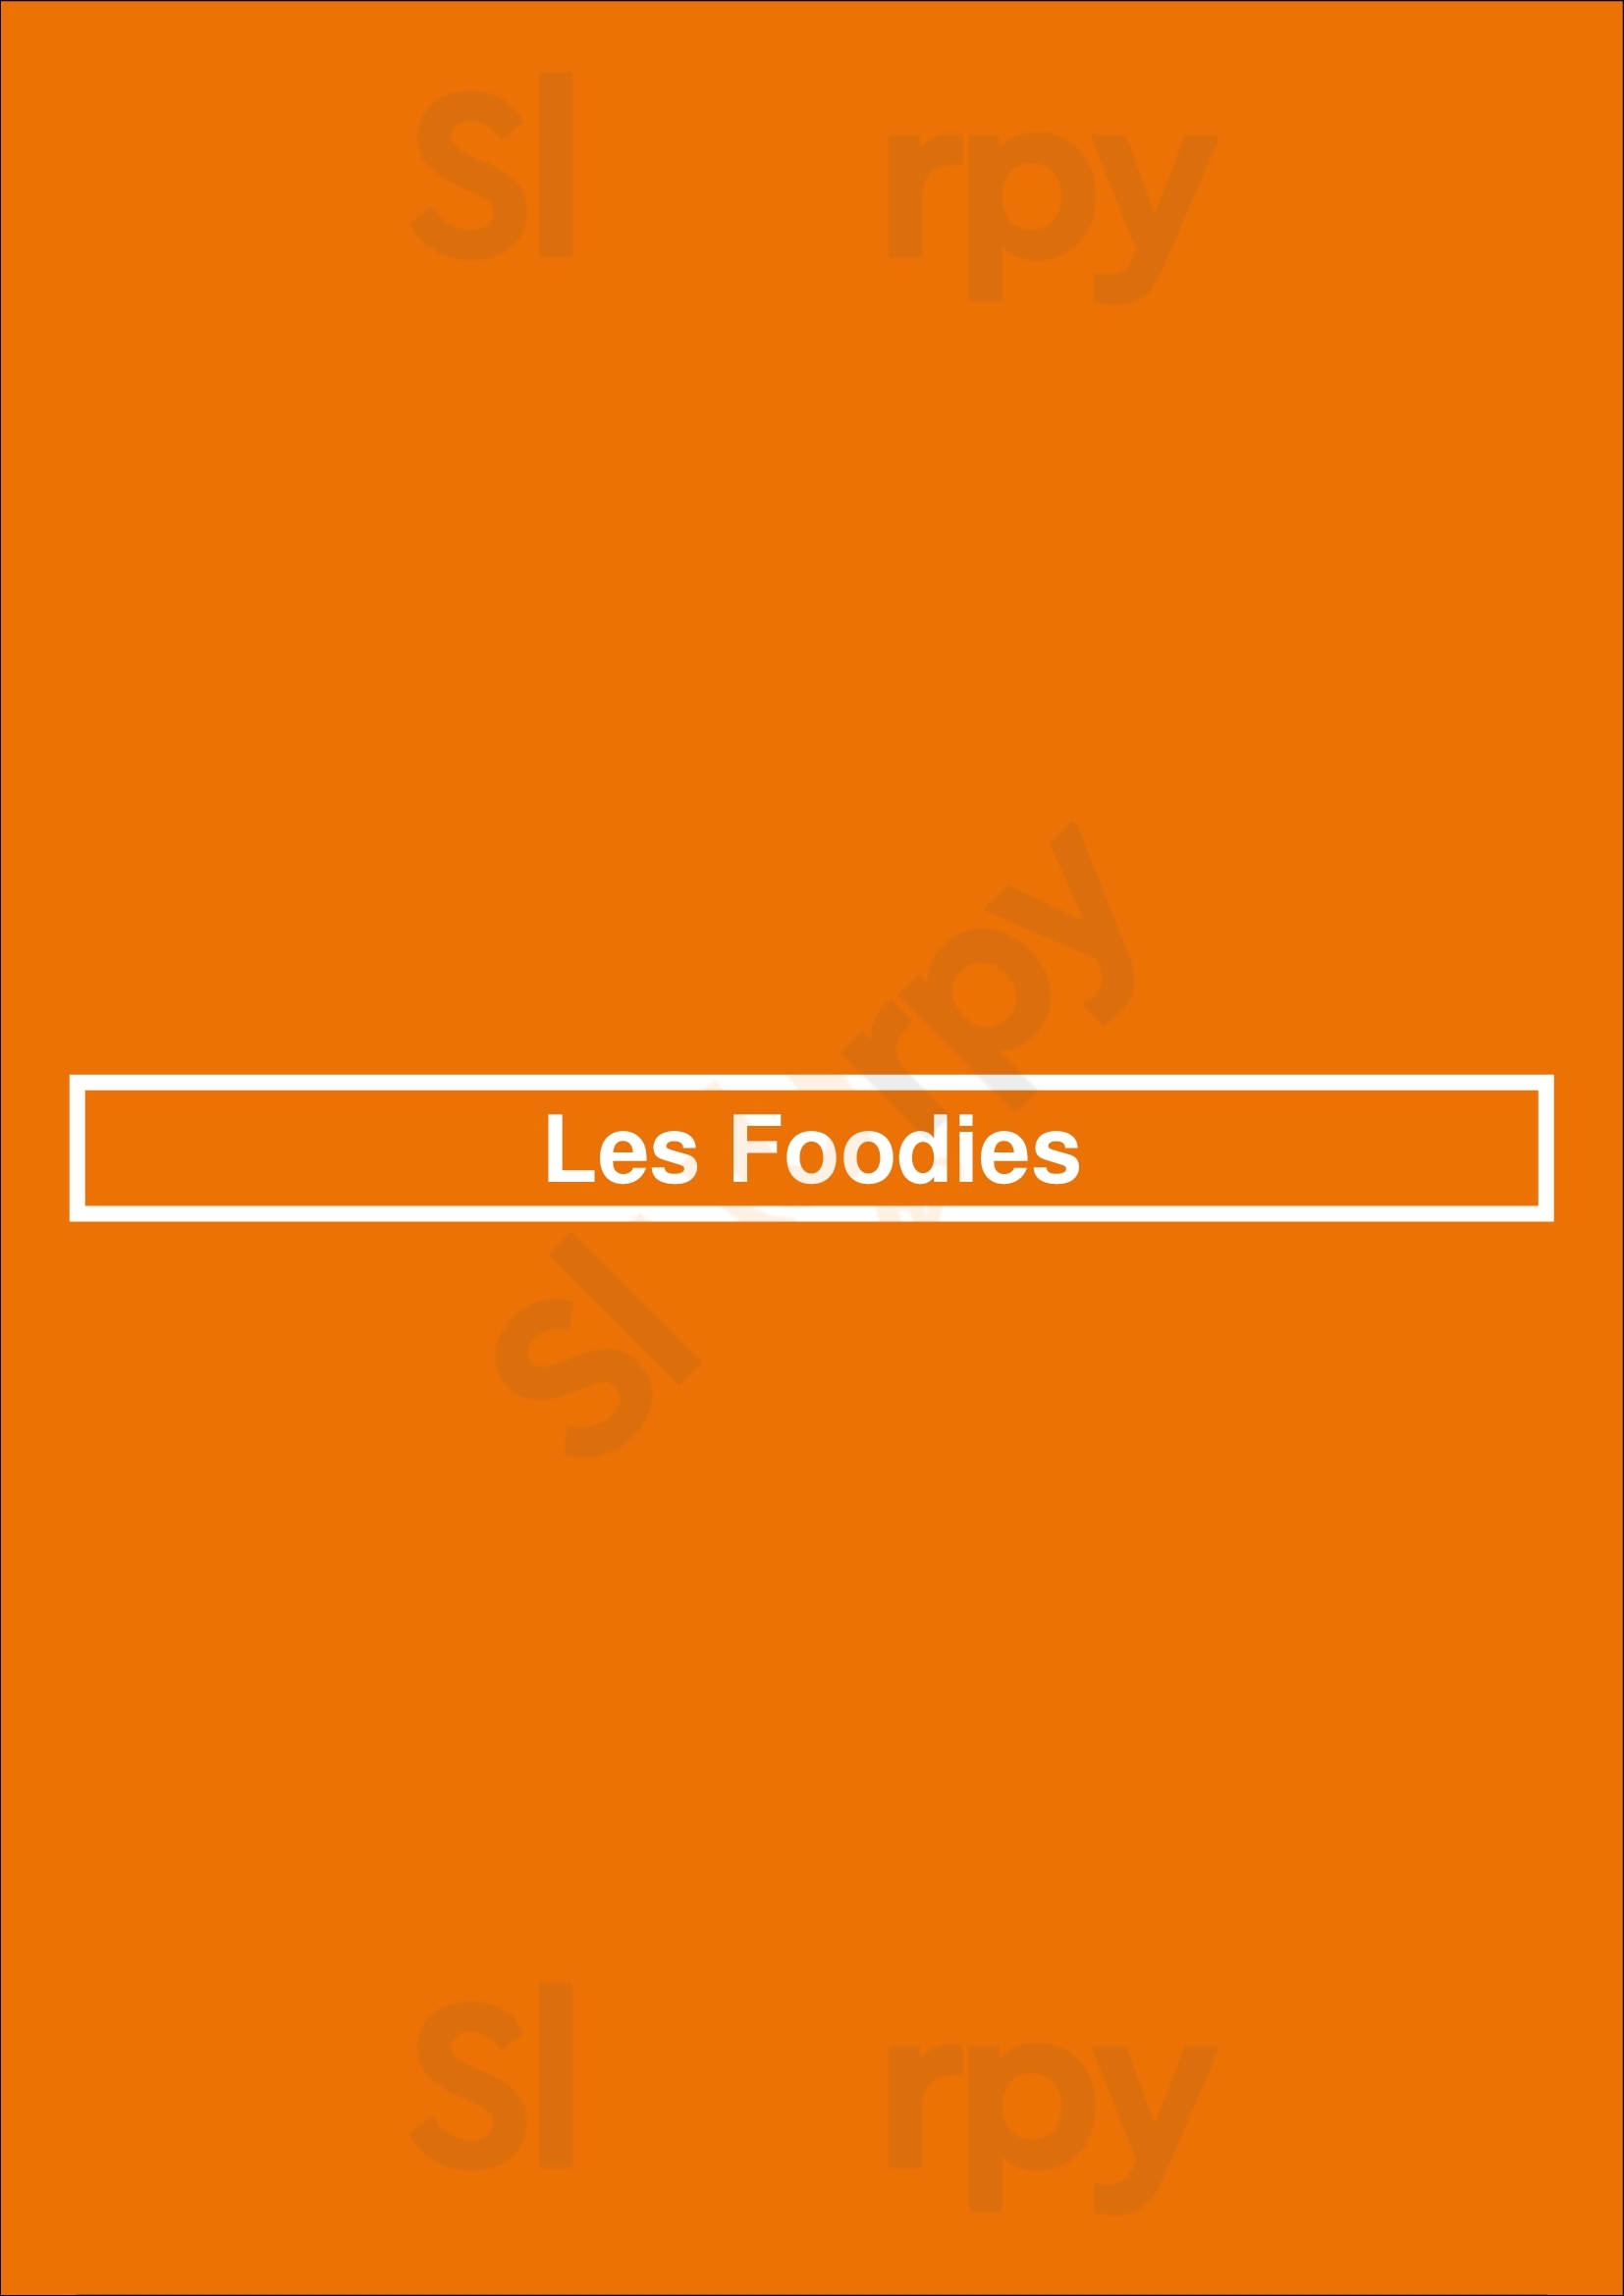 Les Foodies Paris Menu - 1